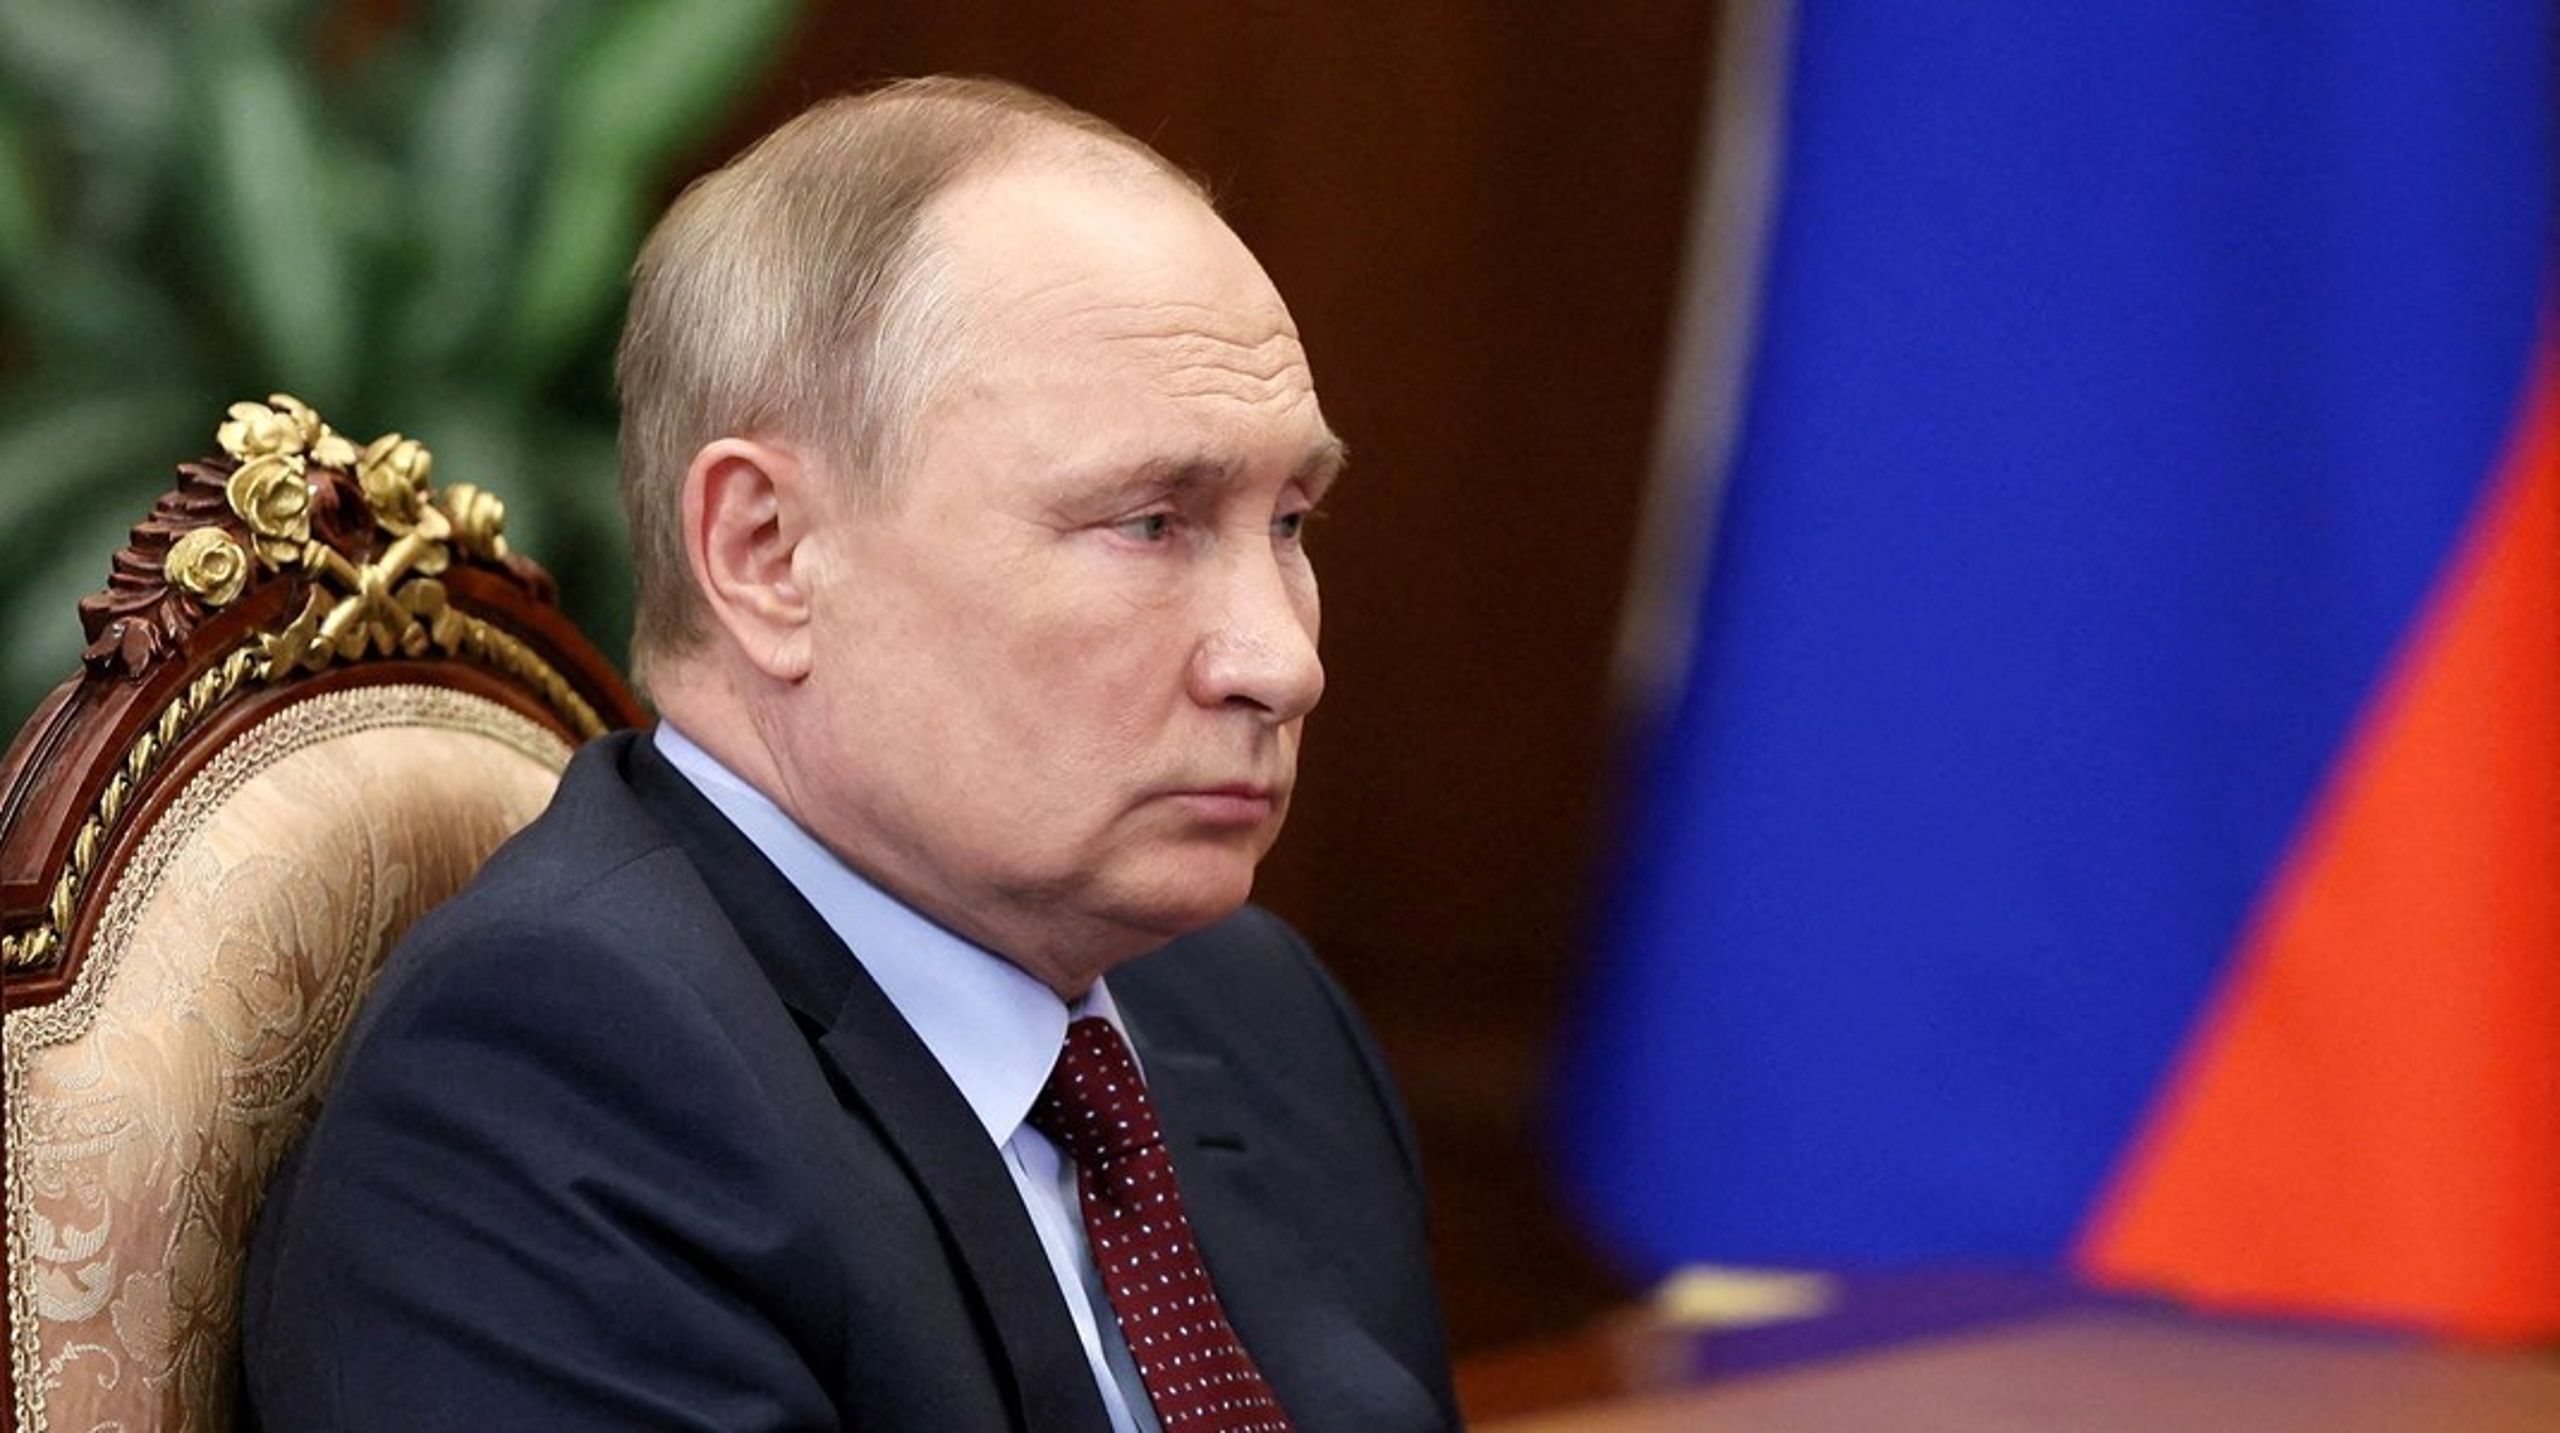 Vladimir Putin har tidligere ment, at ethvert land havde ret til selv at vælge sin sikkerhedsalliance, skriver Vibe Termansen.